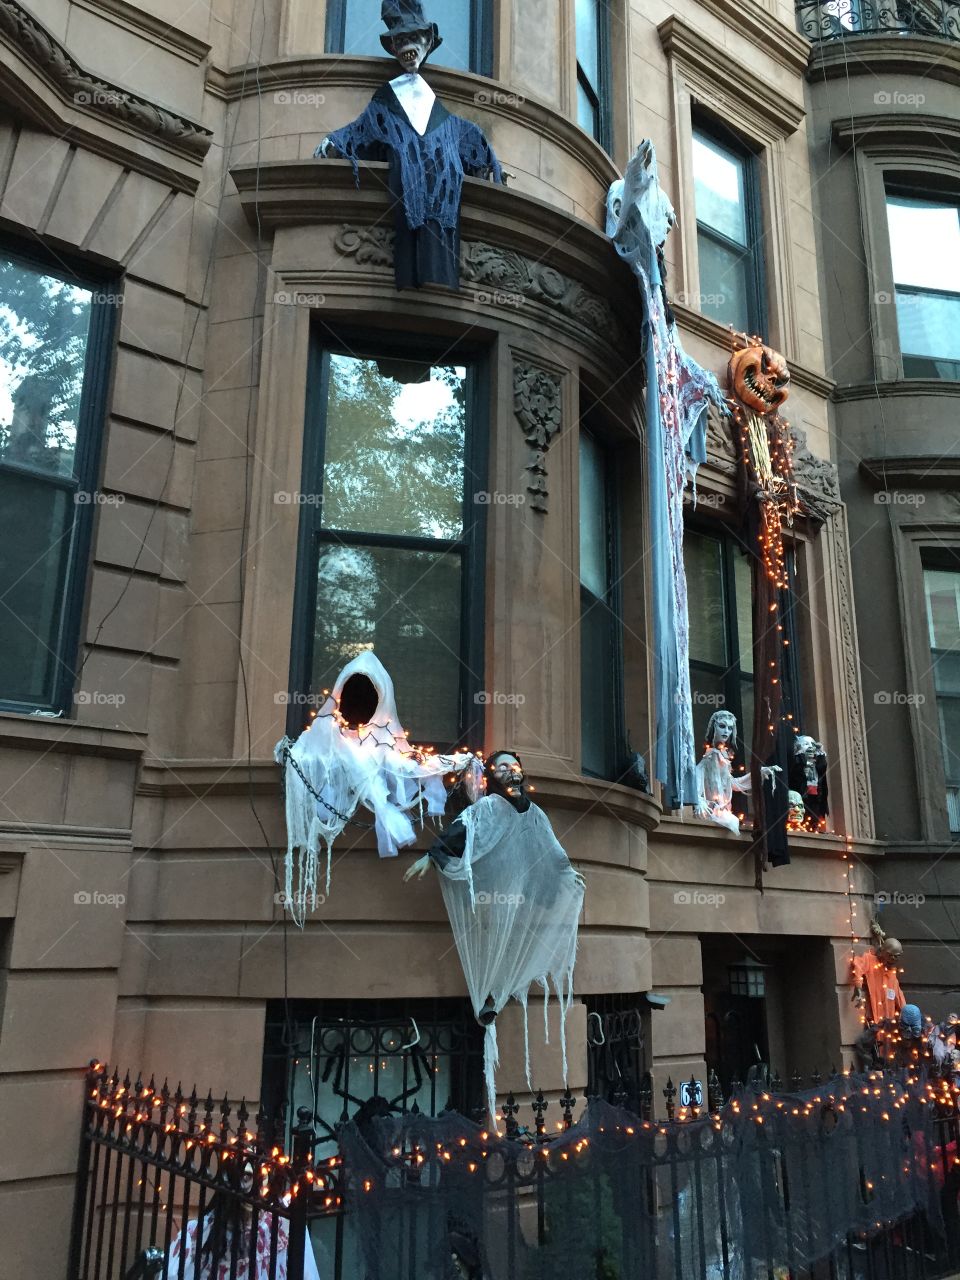 Halloween house NYC